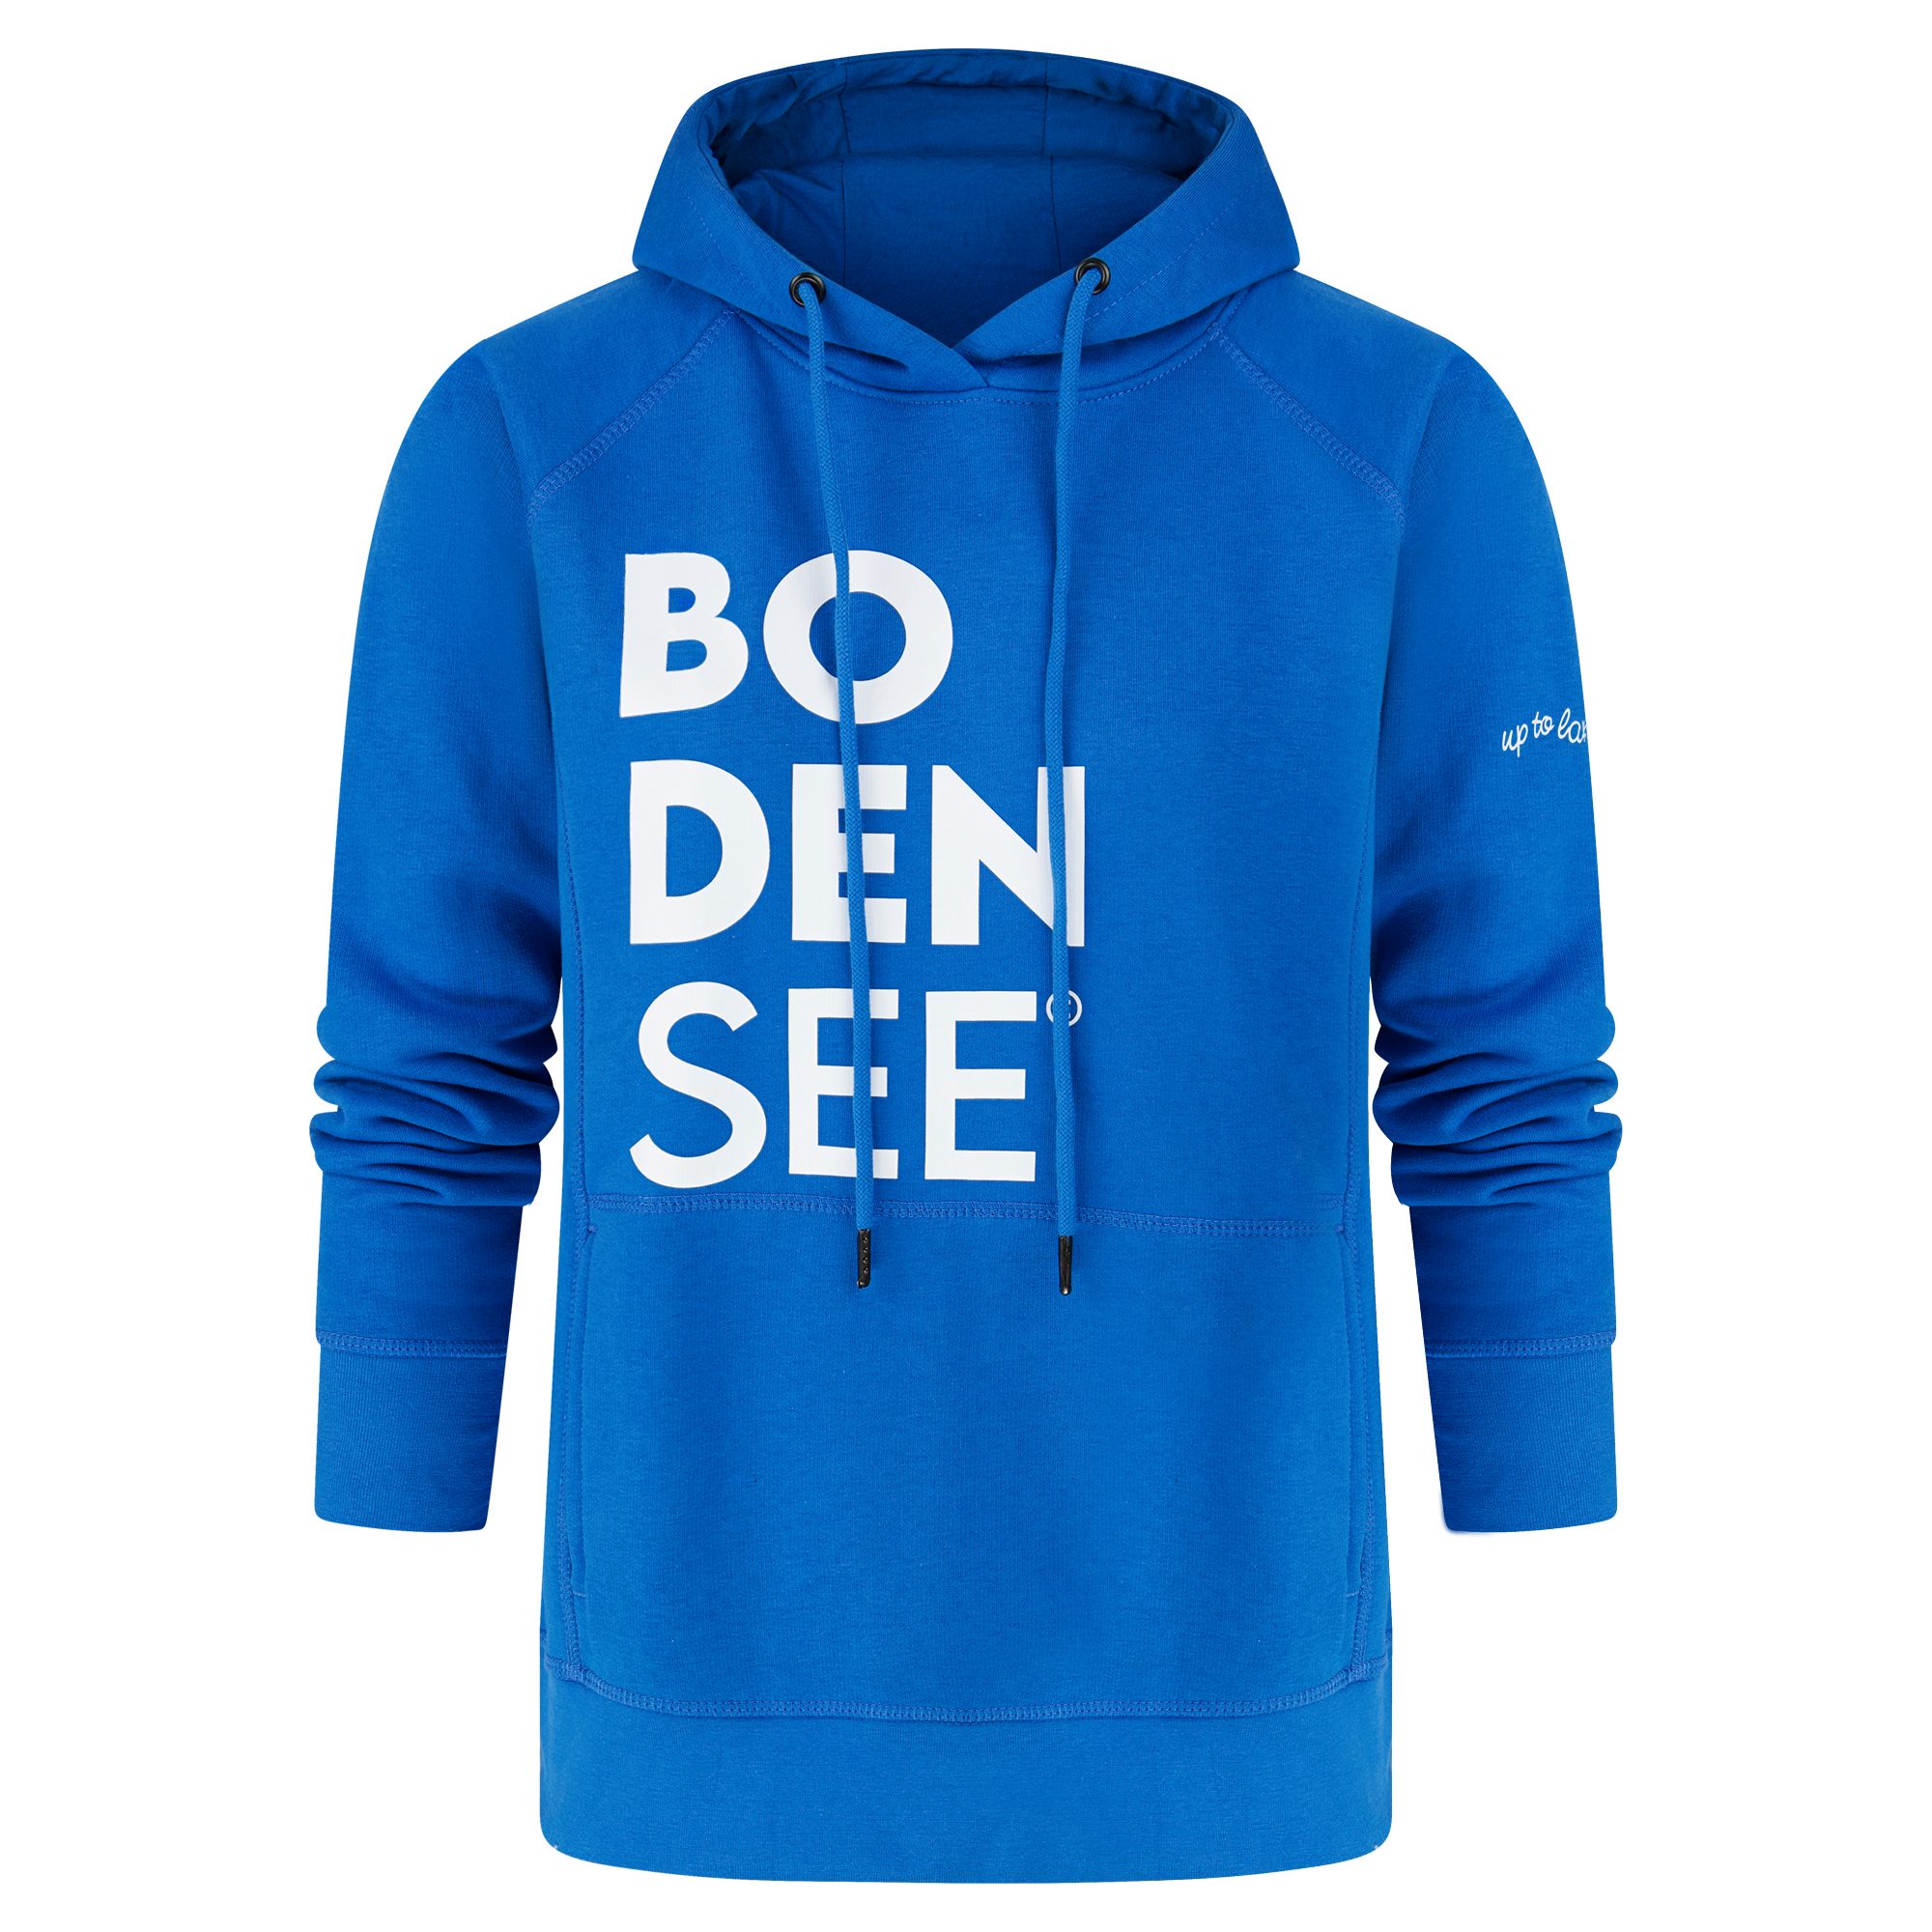 uptolake design Hoodie für Damen in weicher Bio Baumwolle mit Bodensee Schriftzug Cobalt-Blau/Weiß